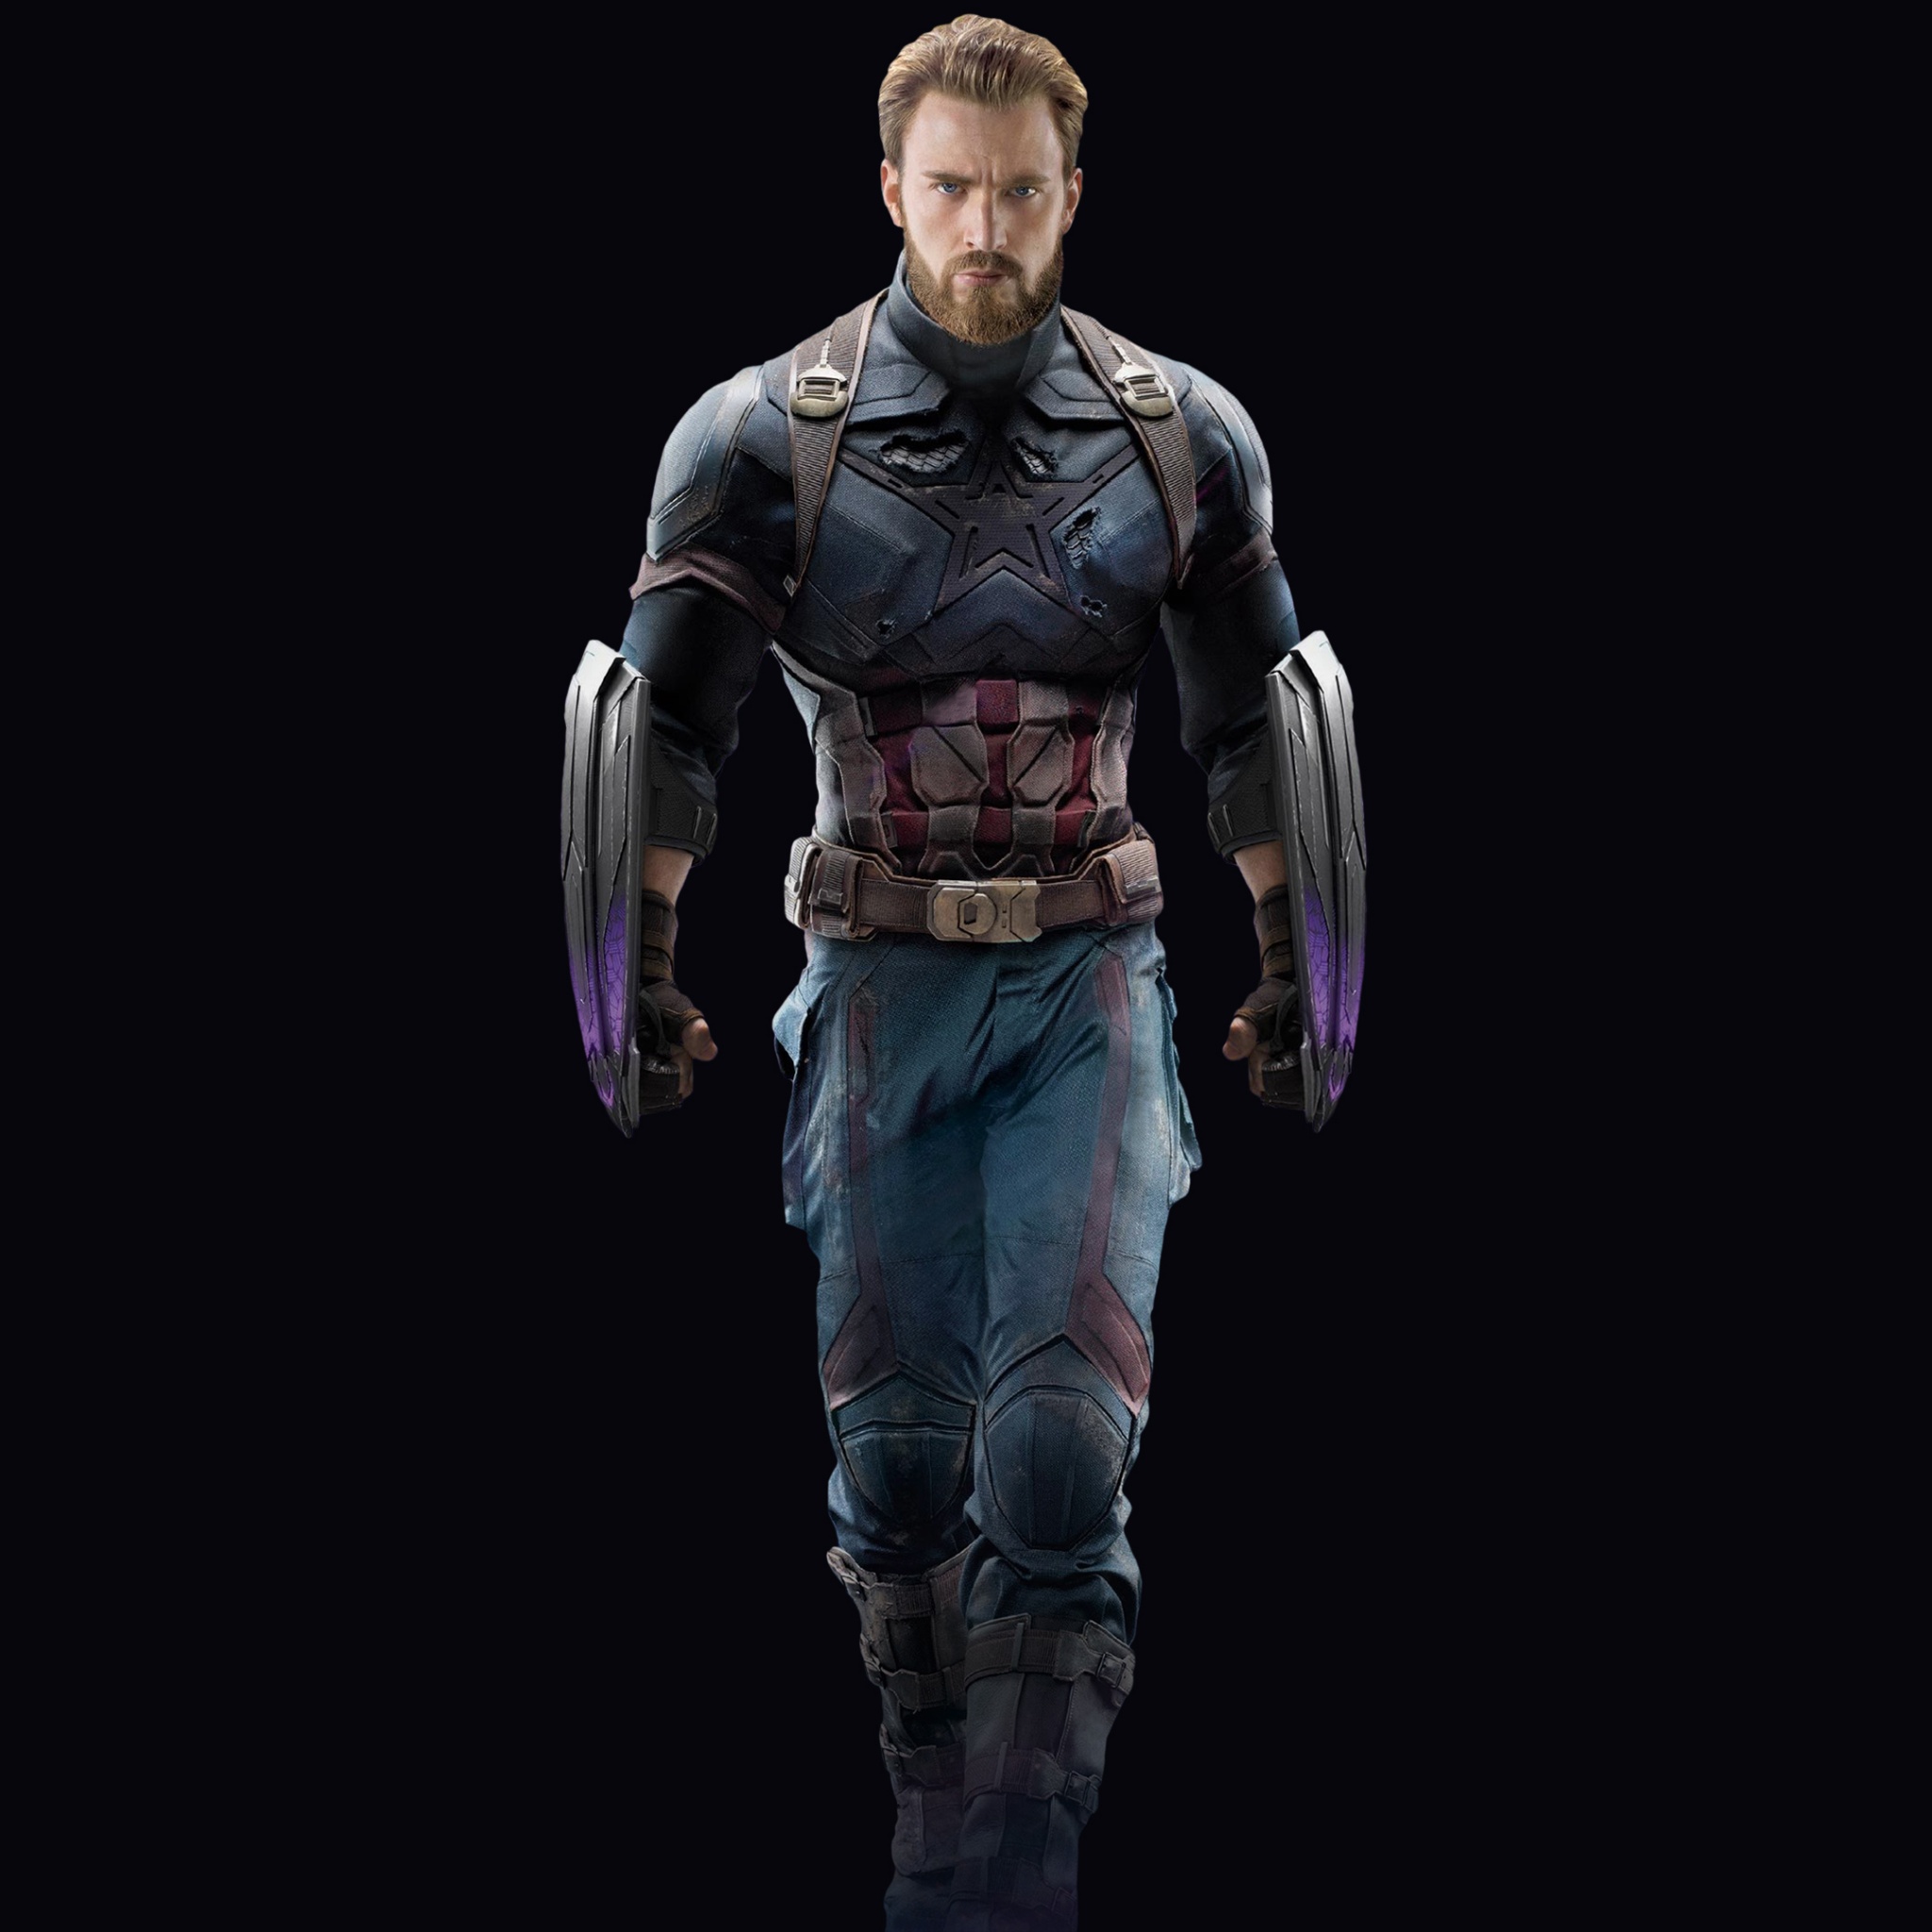 Captain America Wallpaper 4K, Avengers: Infinity War, Black/Dark, #4198